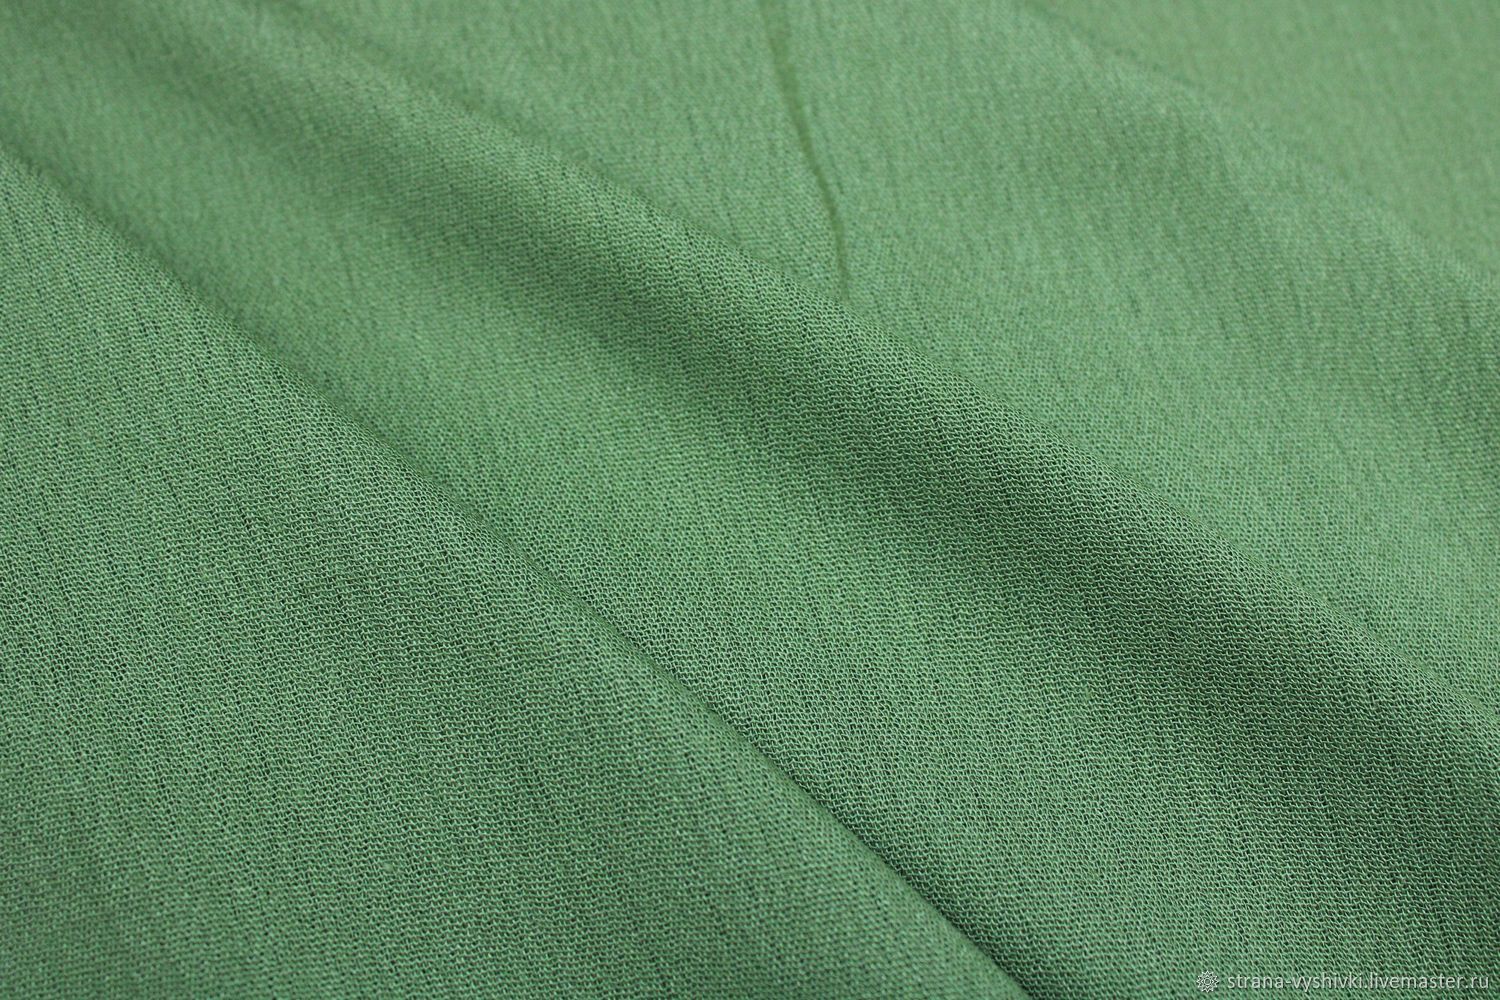 Хлопок зеленого цвета. Хлопок ткань зеленая. Зеленый креп. Ткань хлопок креп. Светло-зеленая хлопковая ткань.